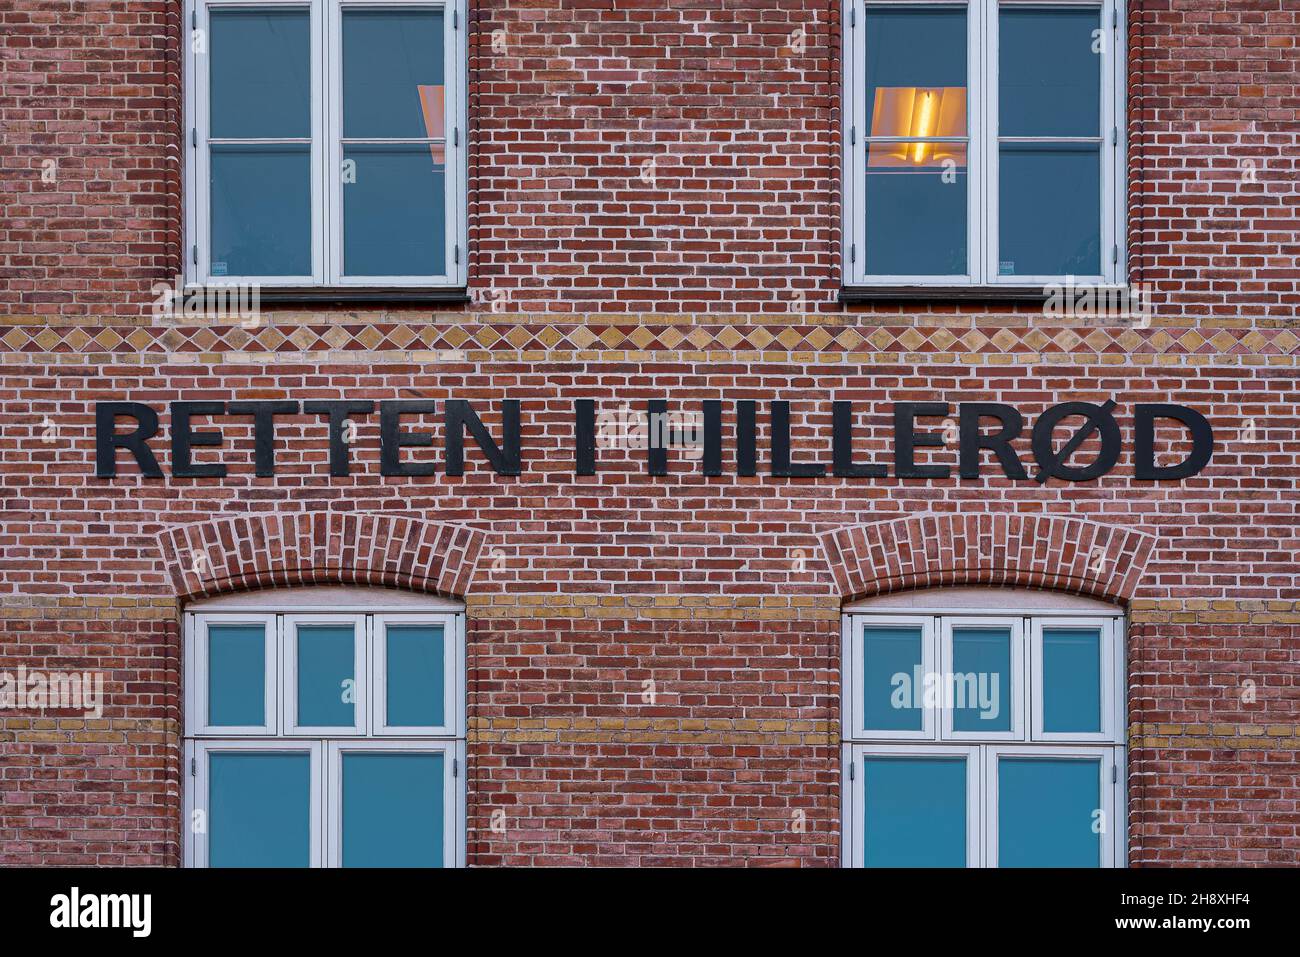 Il tribunale di Hillerod e il cartello su un muretto rosso, Hillerod, Danimarca, 26 novembre 2021 Foto Stock